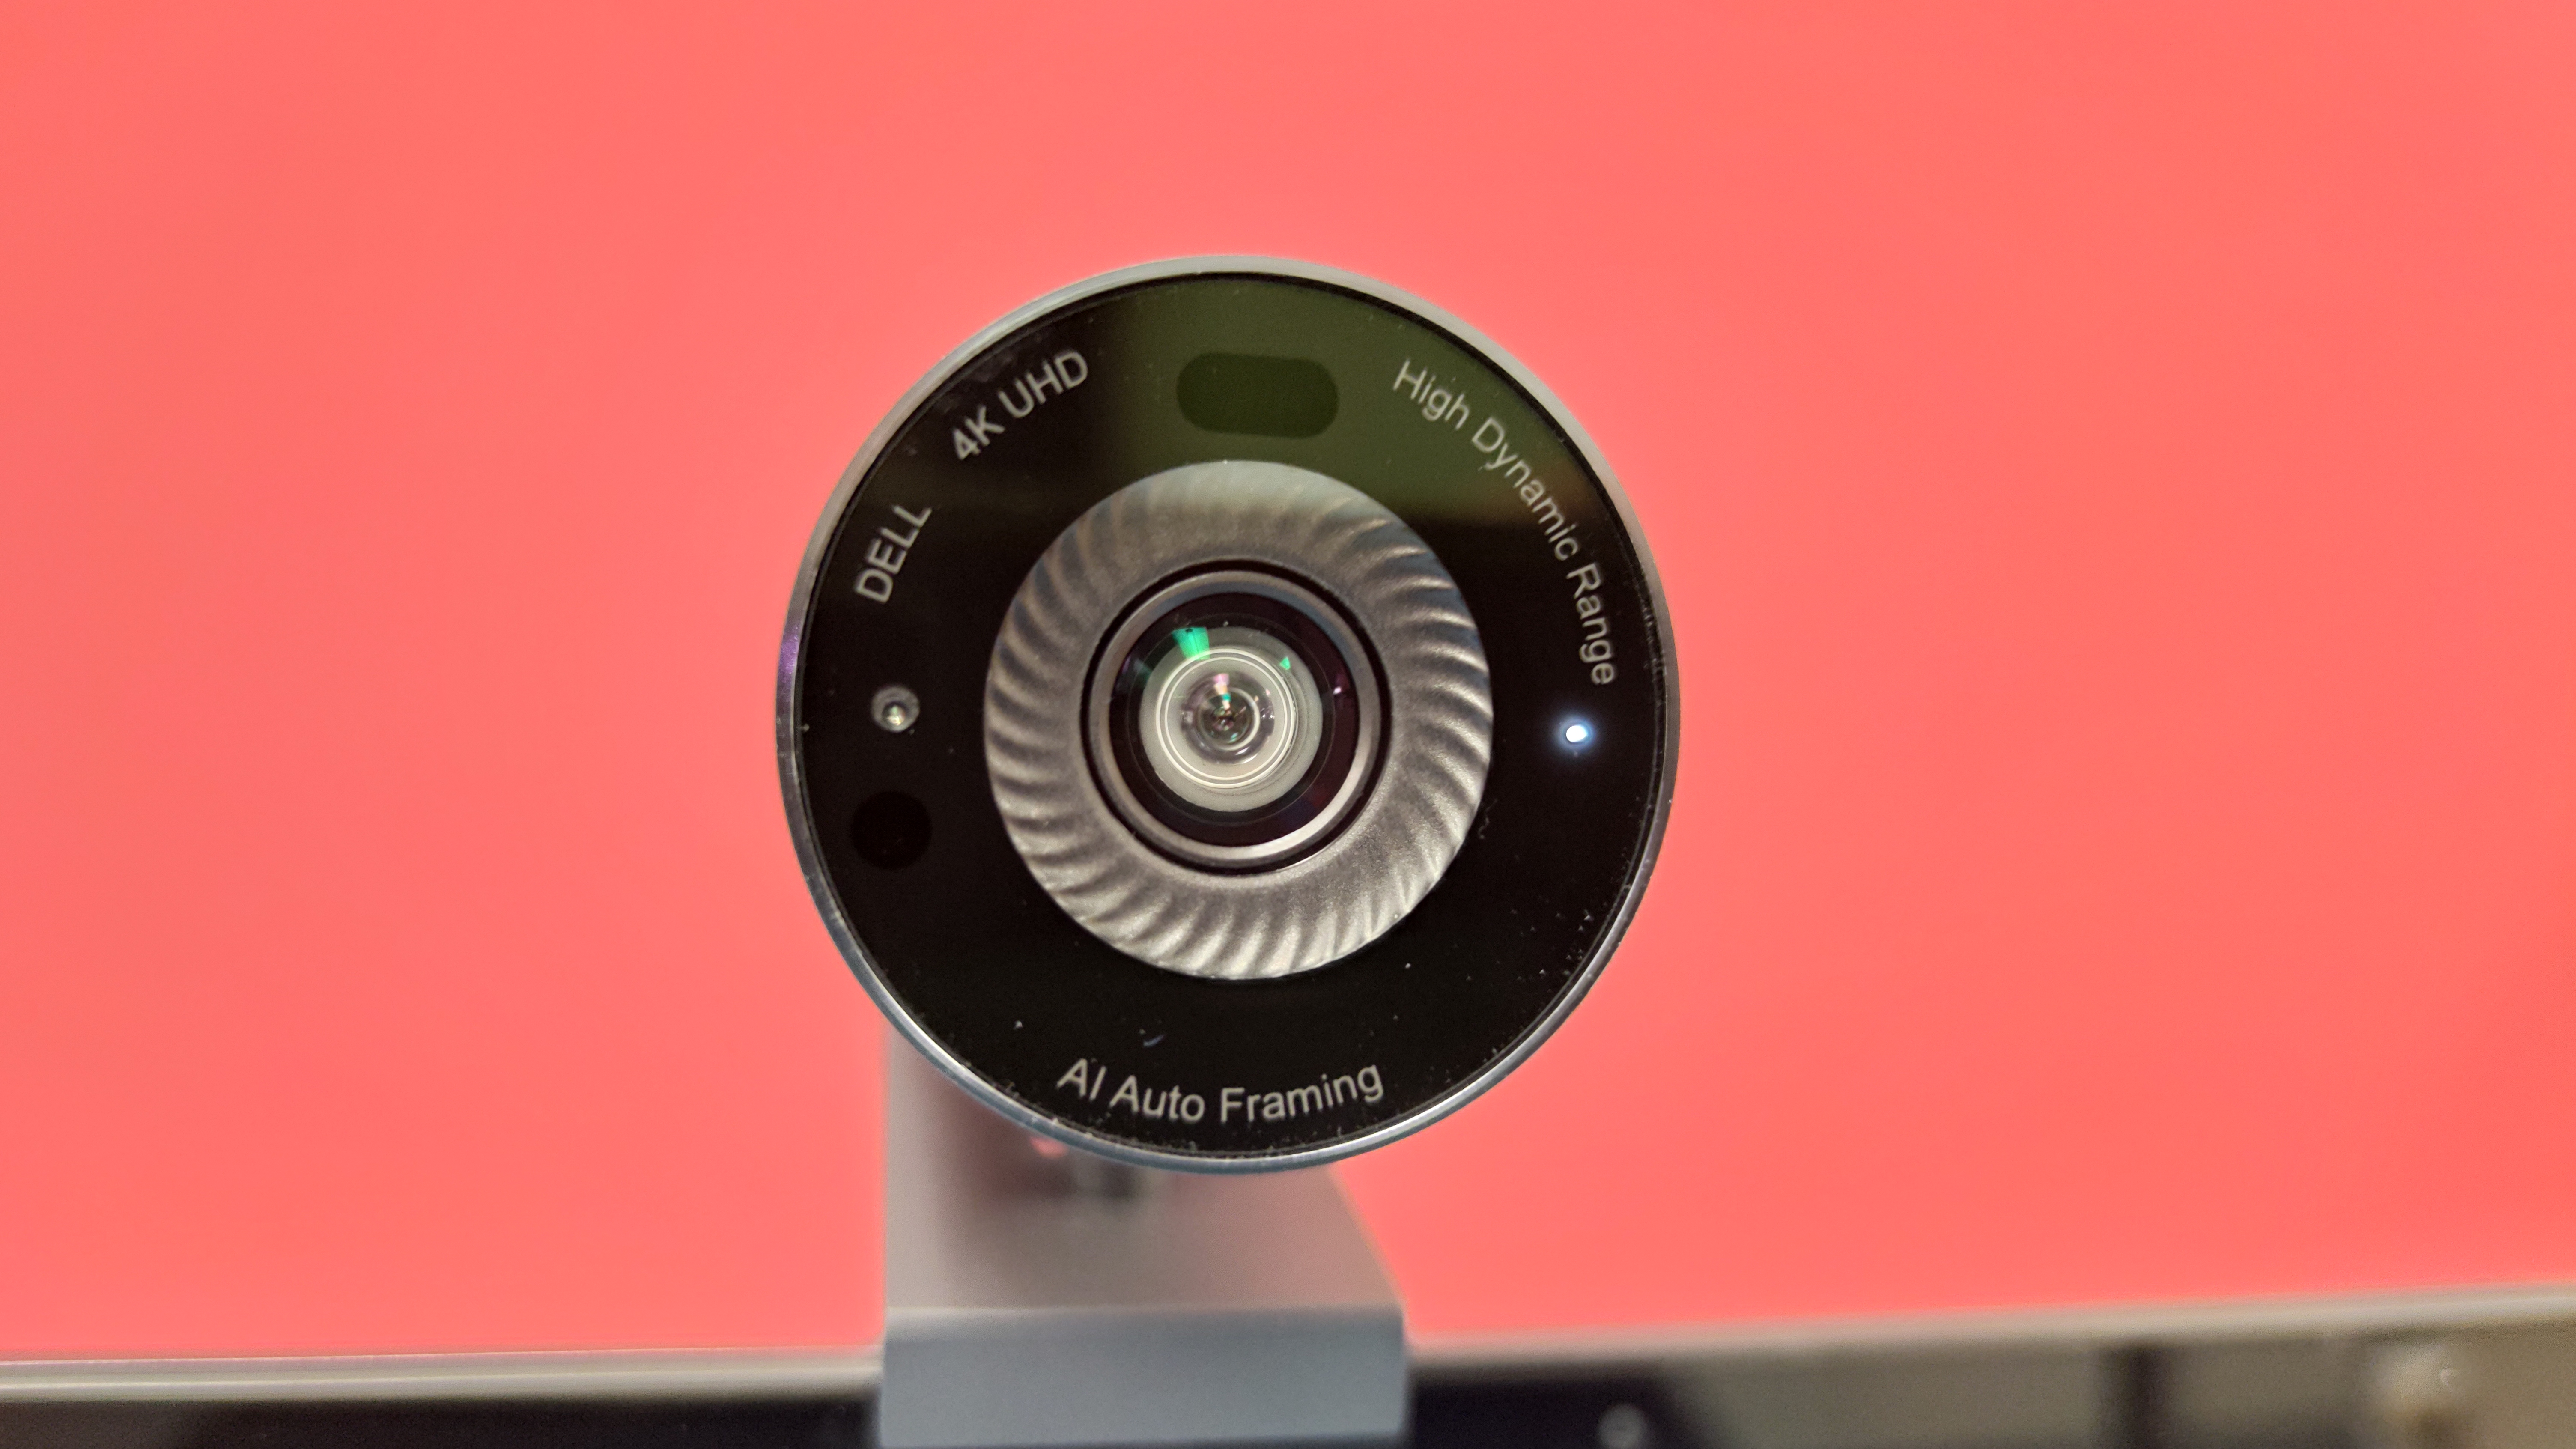 Webcam Dell Ultrasharp 4K im Test: scharfes Bild, KI & hoher Preis |  TechStage